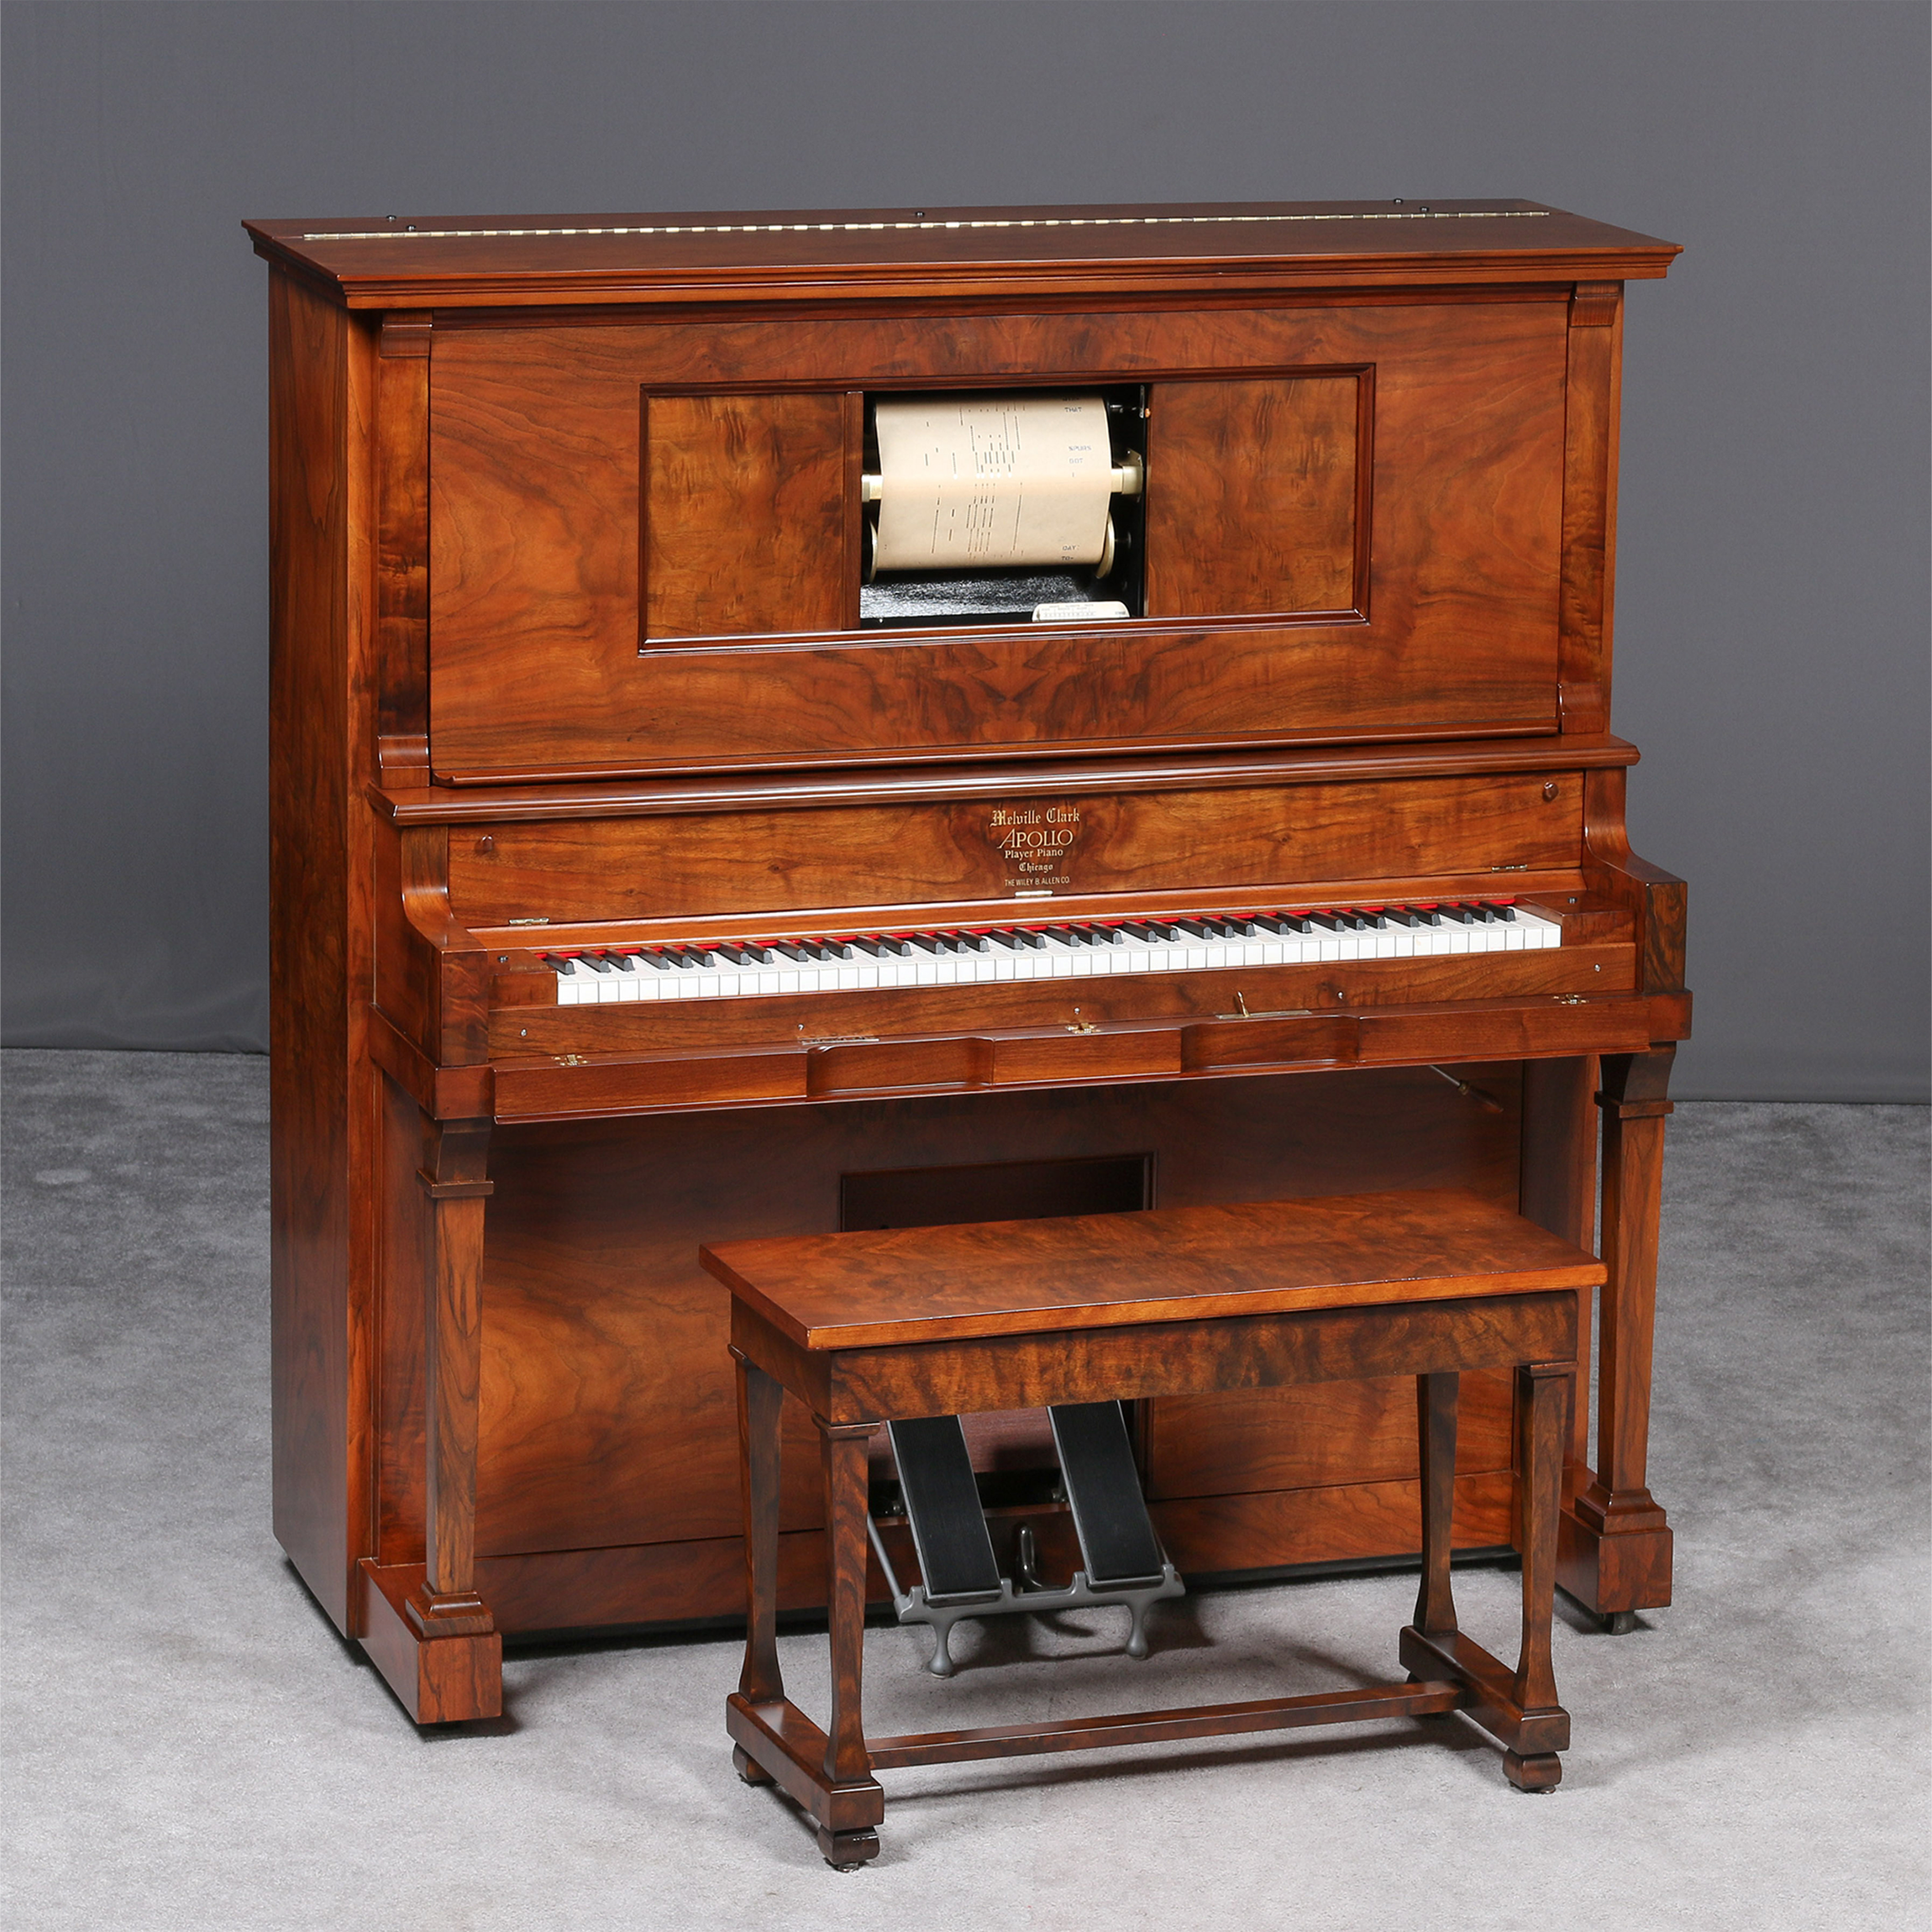 Player piano for sale seiko presage ssa445j1